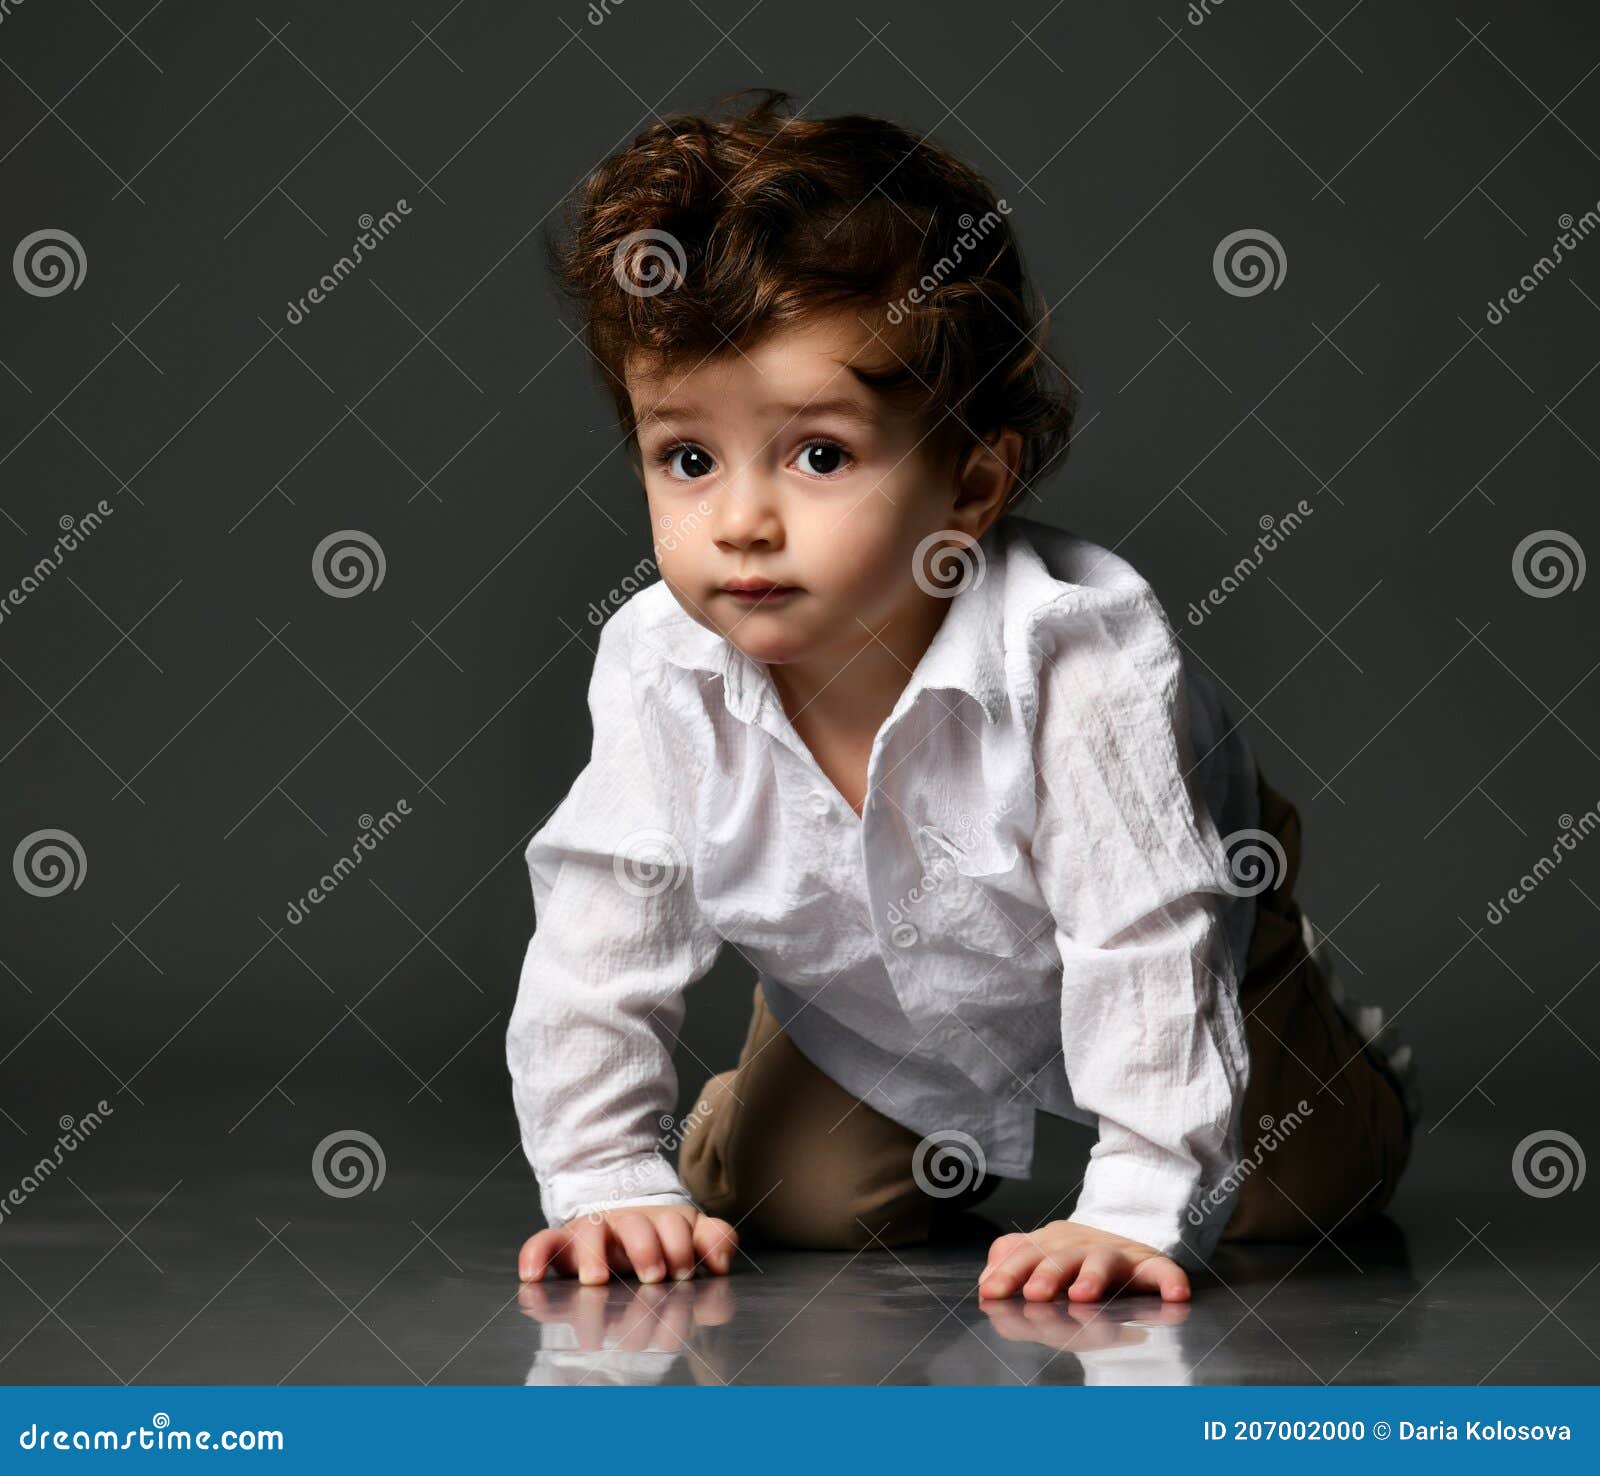 Retrato Elegante De Un Niño Bebé De Moda En Gris Foto de archivo - Imagen  de ropas, pantalones: 207002000